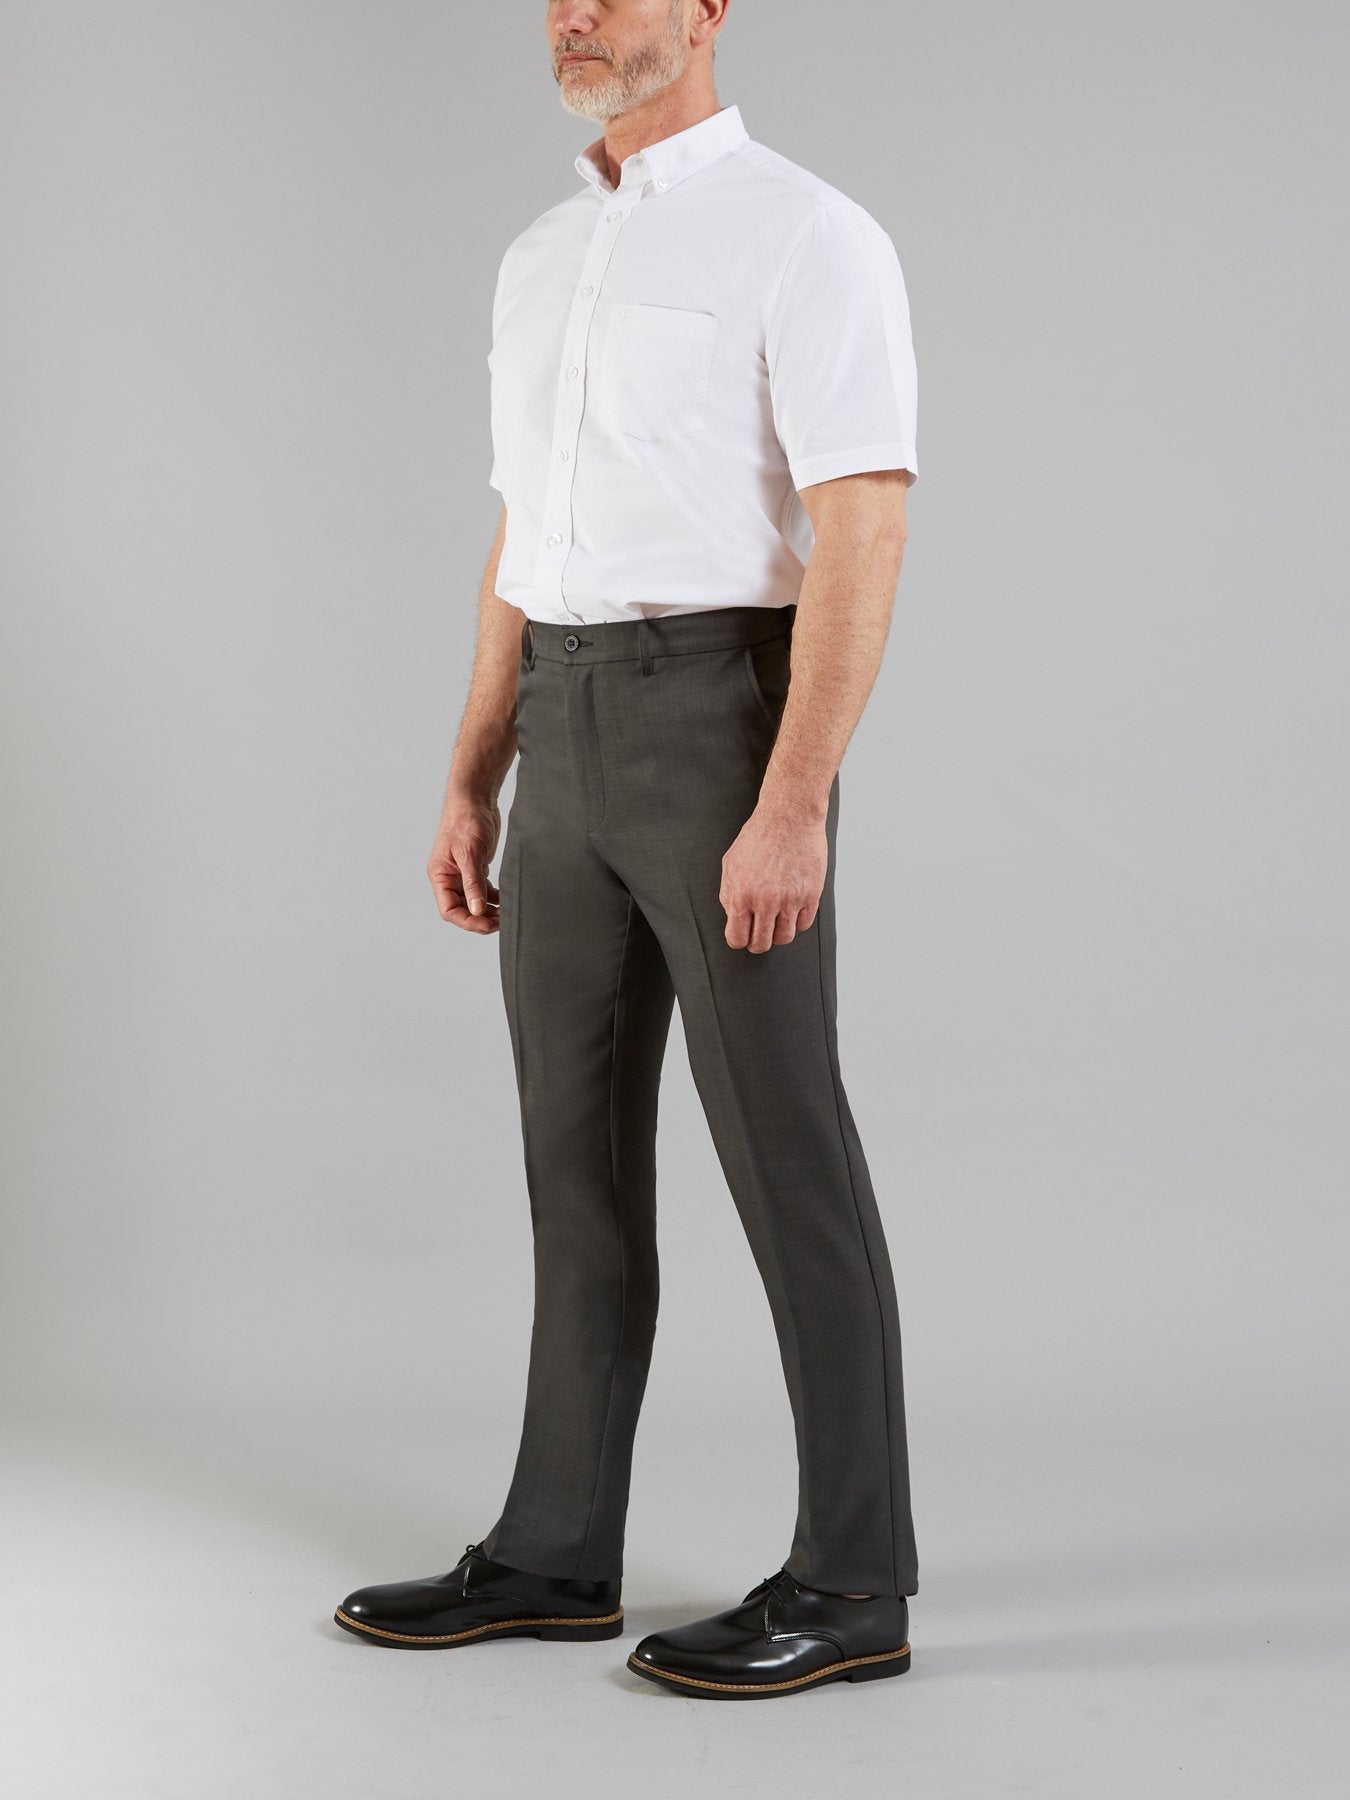 Roachman Trousers In Beige | Farah® Online